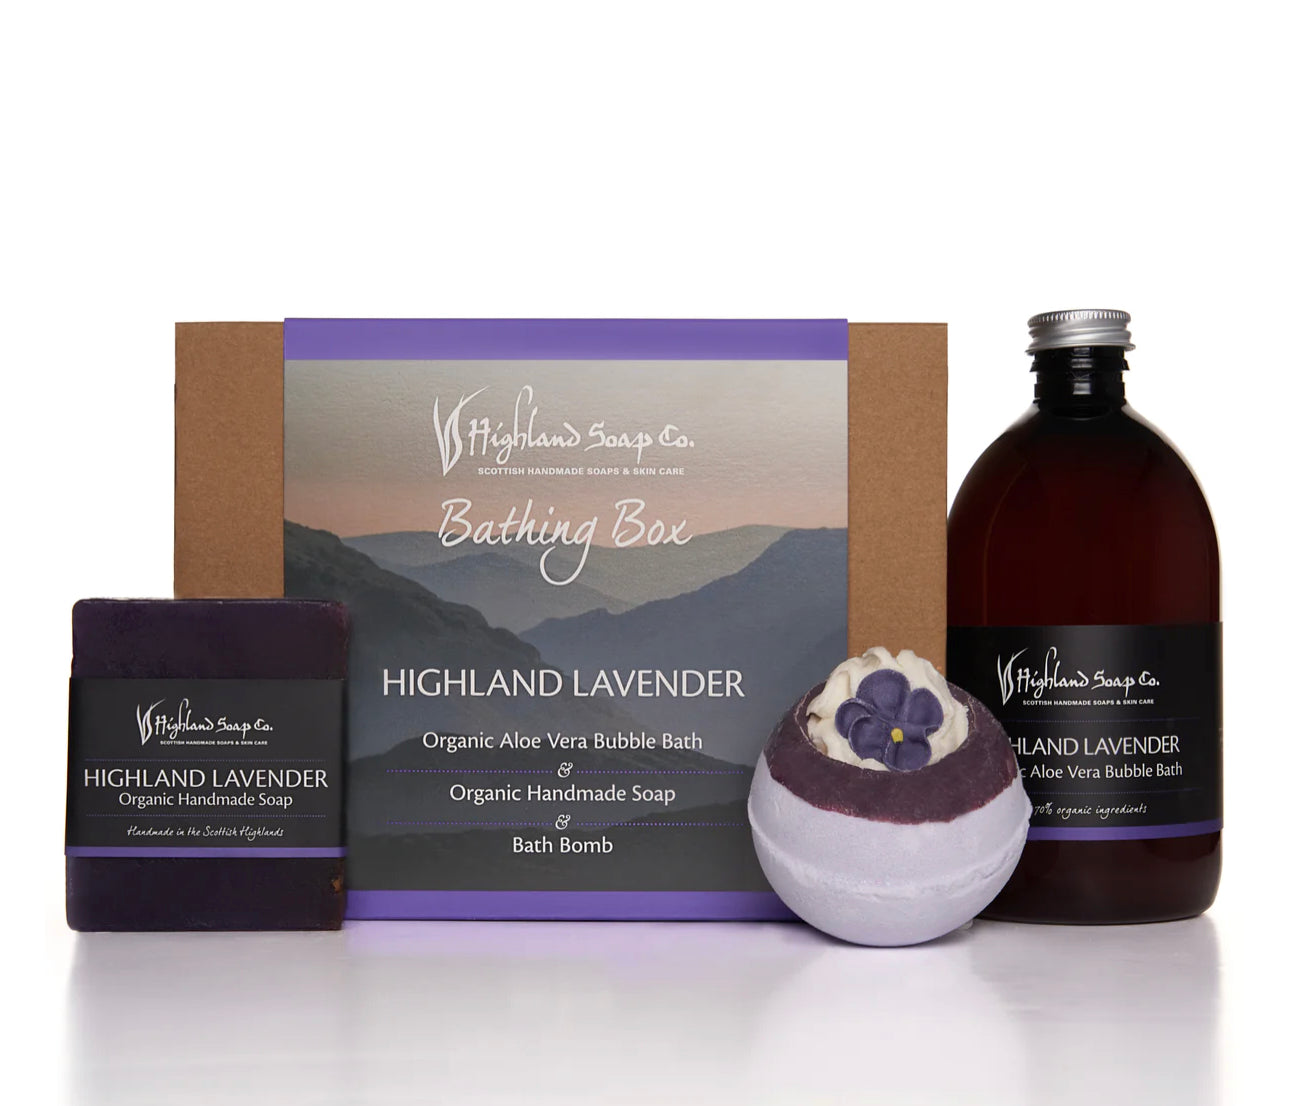 Highland Soap Company Bathing Box Highland Lavender